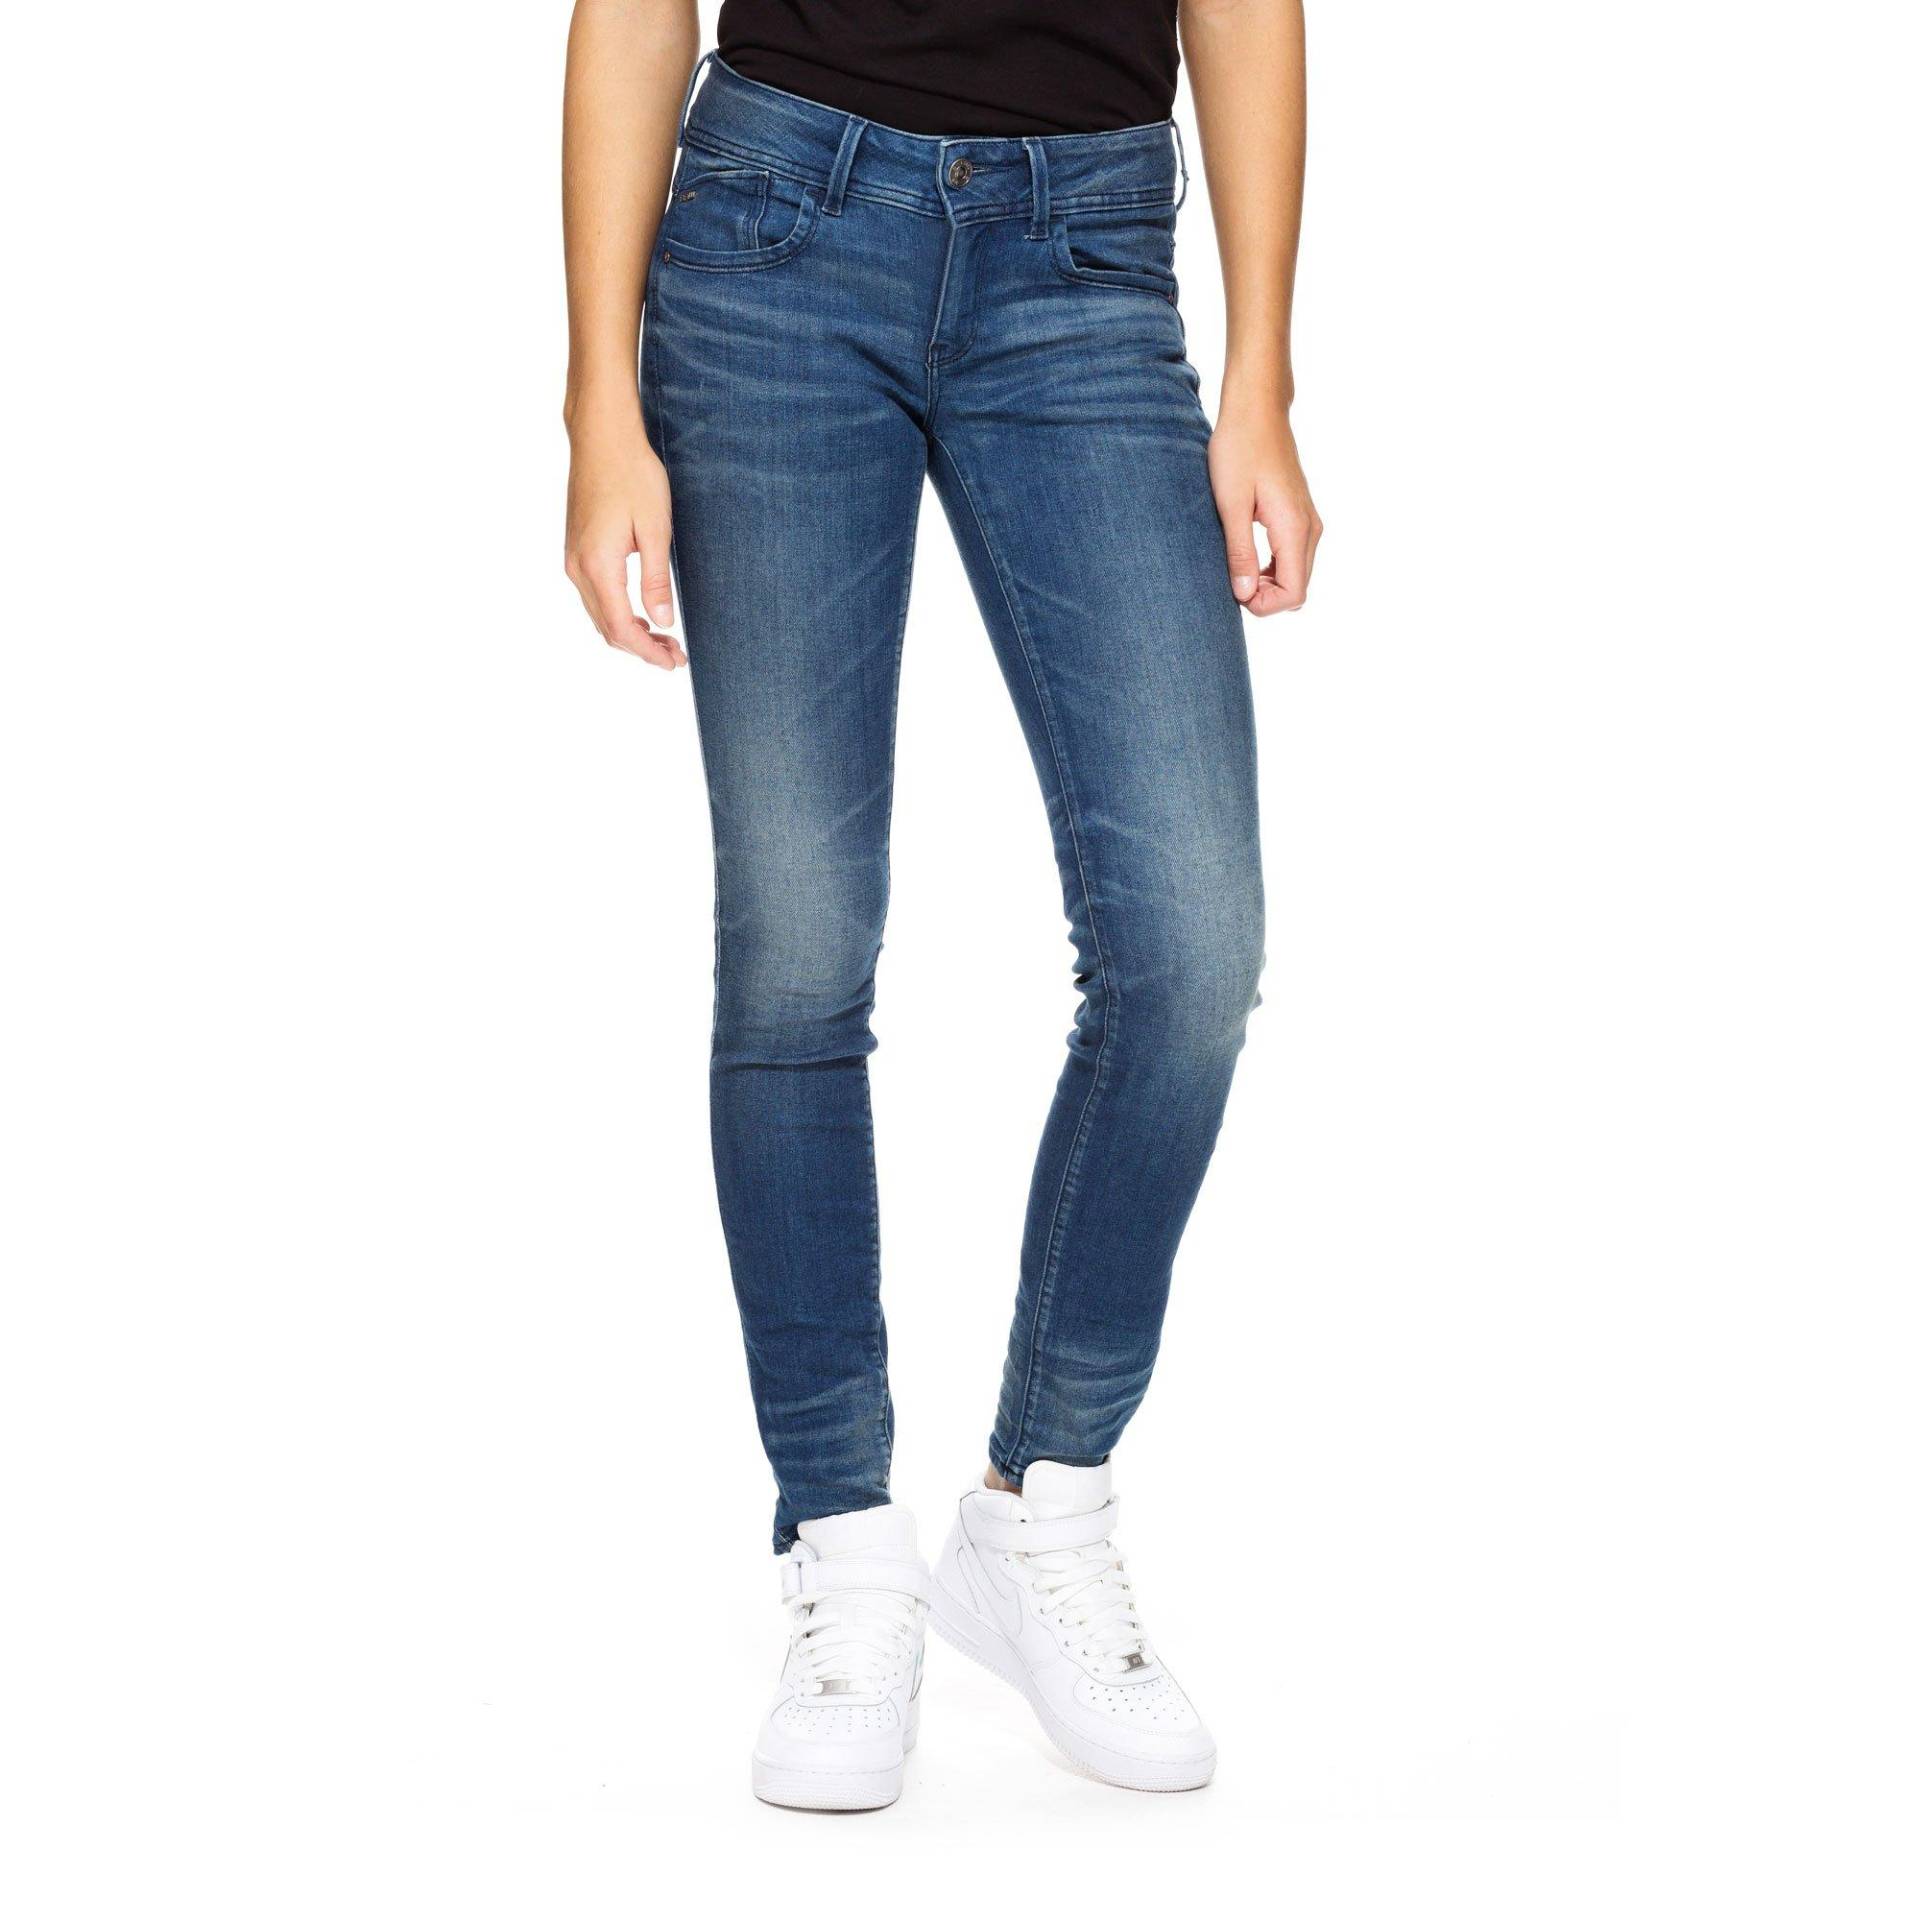 Jeans, Skinny Fit Damen Blau Denim L32/W31 von G-STAR